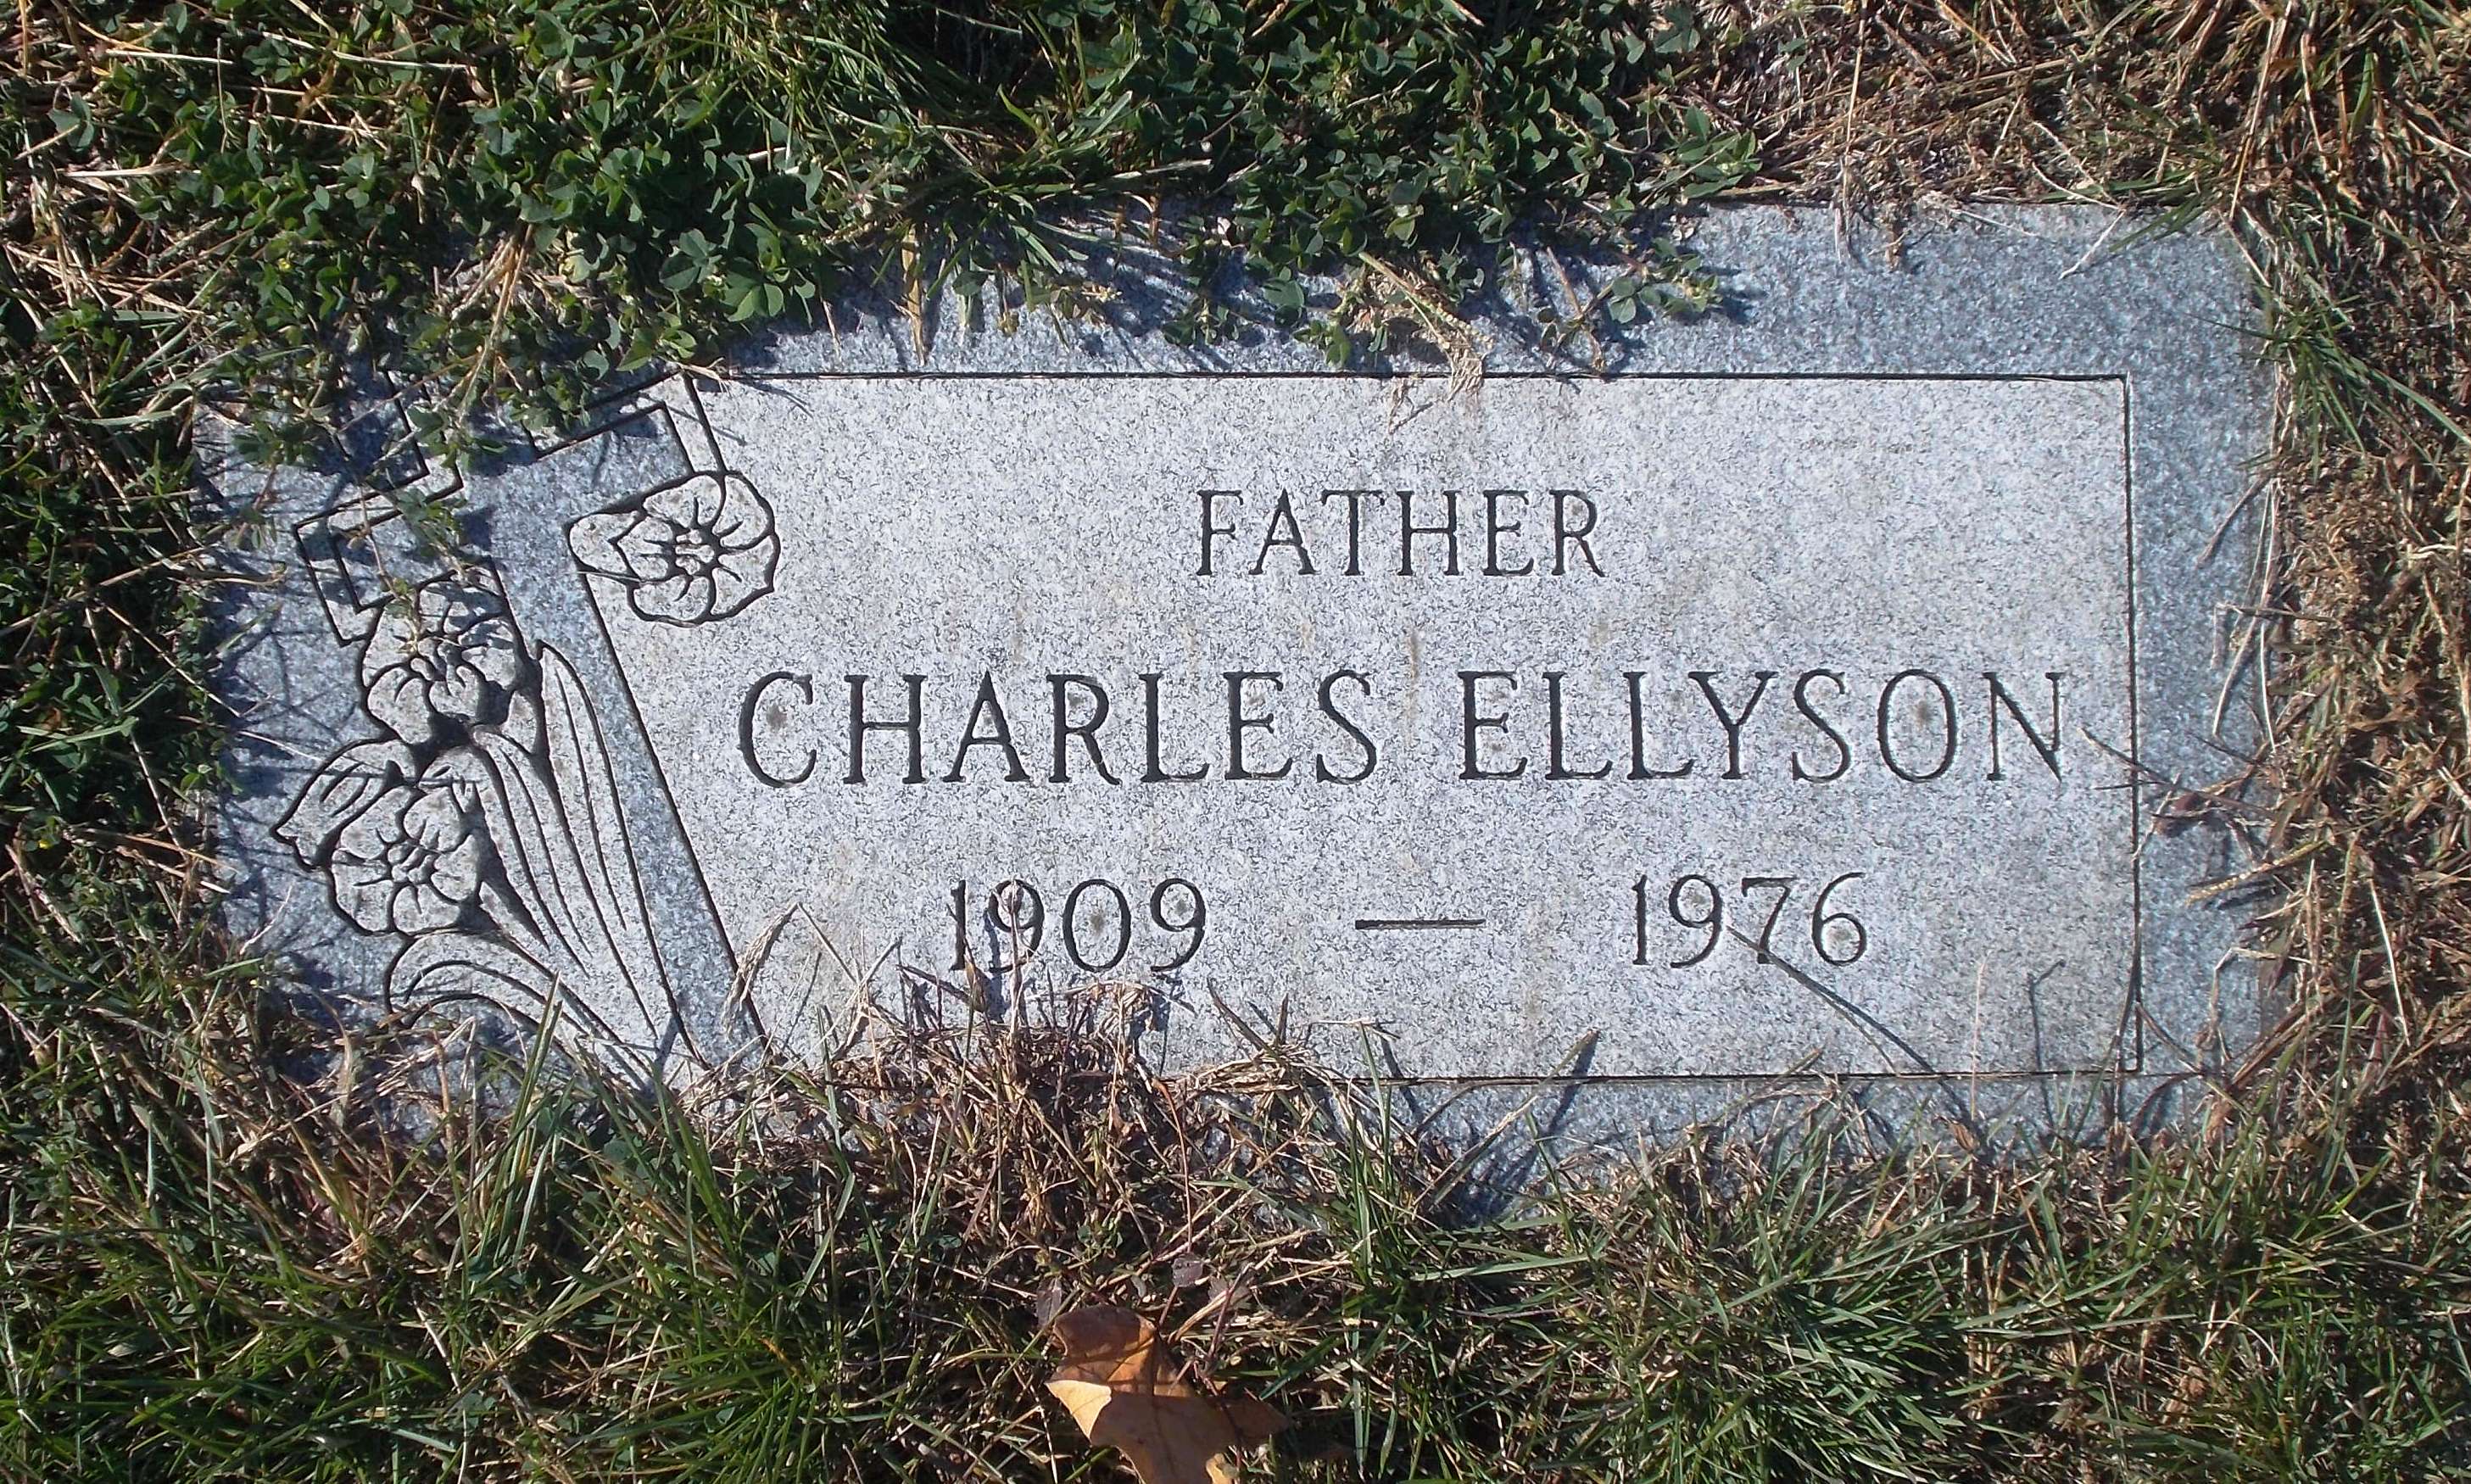 Charles Ellyson